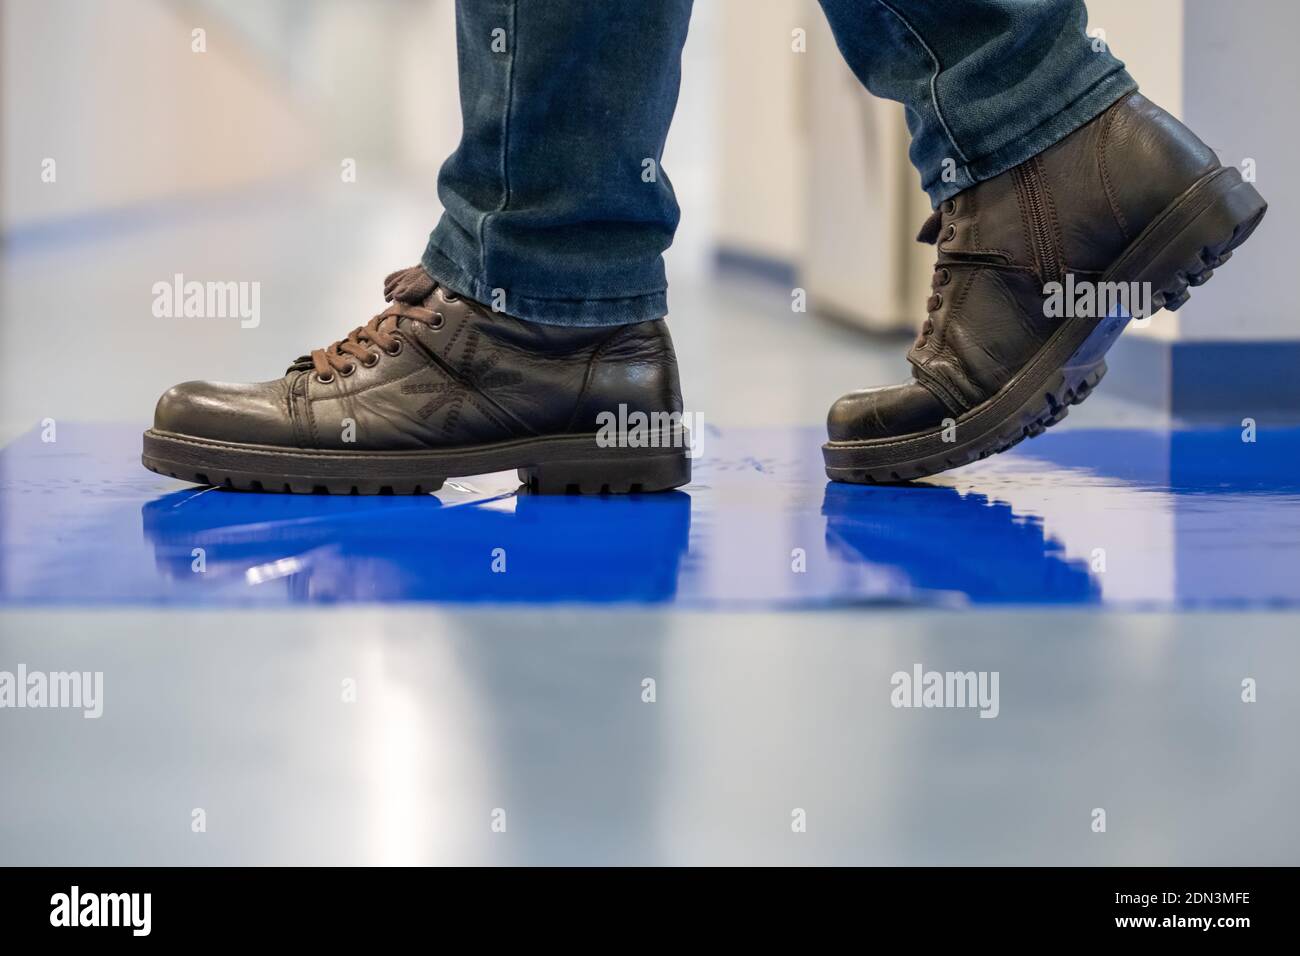 Mann in braunen Schuhen tritt auf blauen Klebstoff klebrige Matten